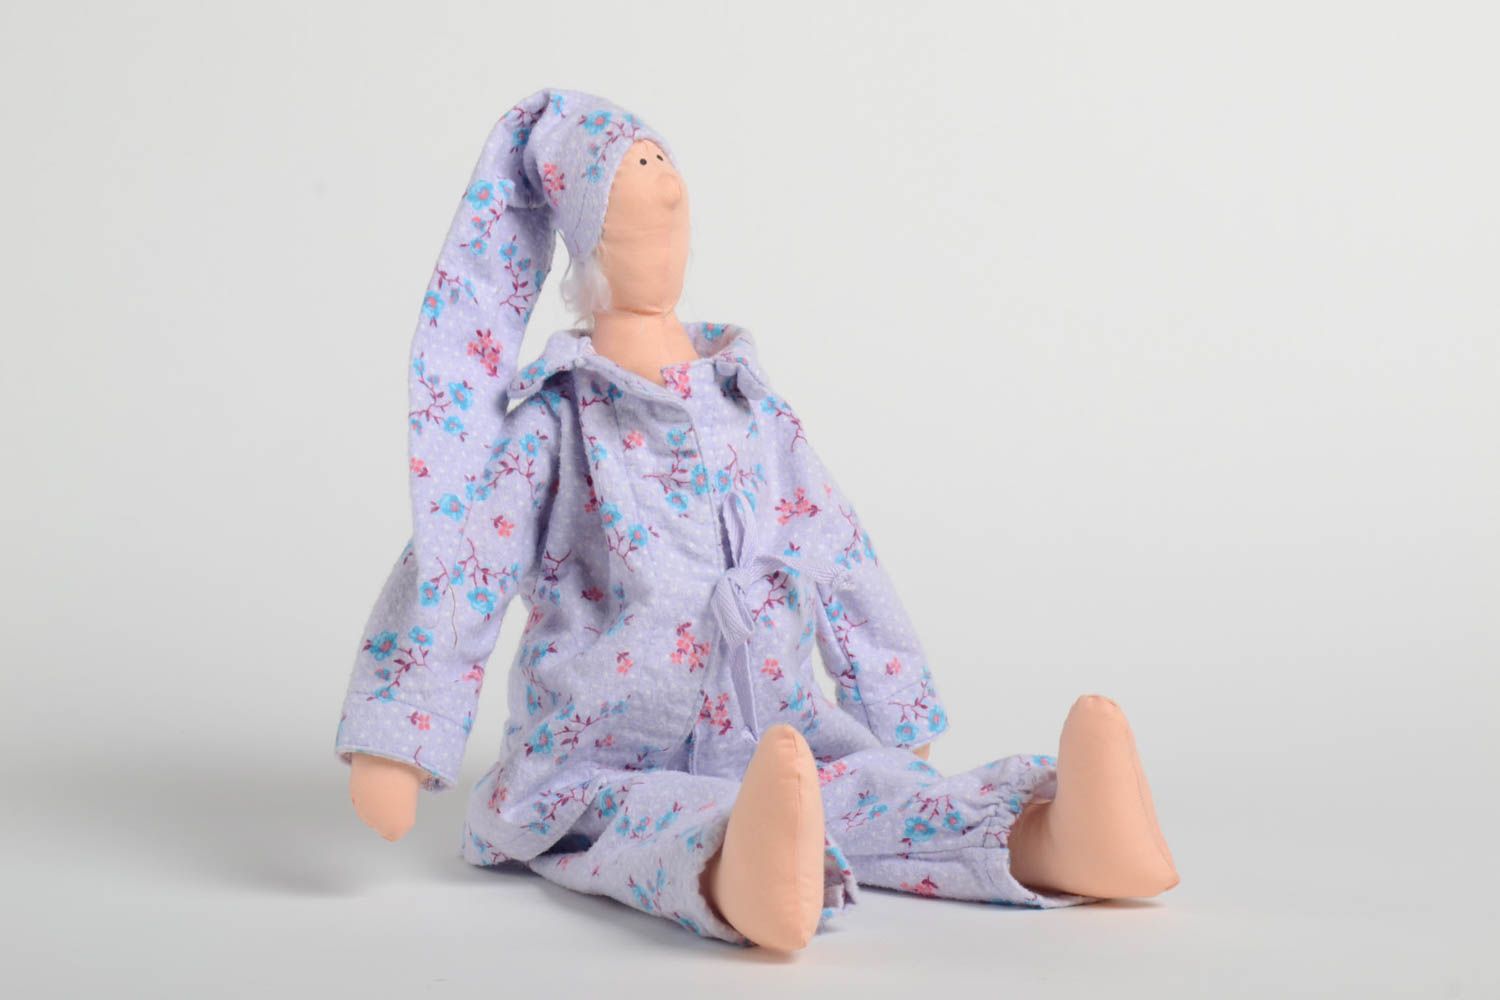 Handmade Stoff Puppe Kinder Spielzeug Geschenk Idee für Haus Dekor aus Baumwolle foto 2